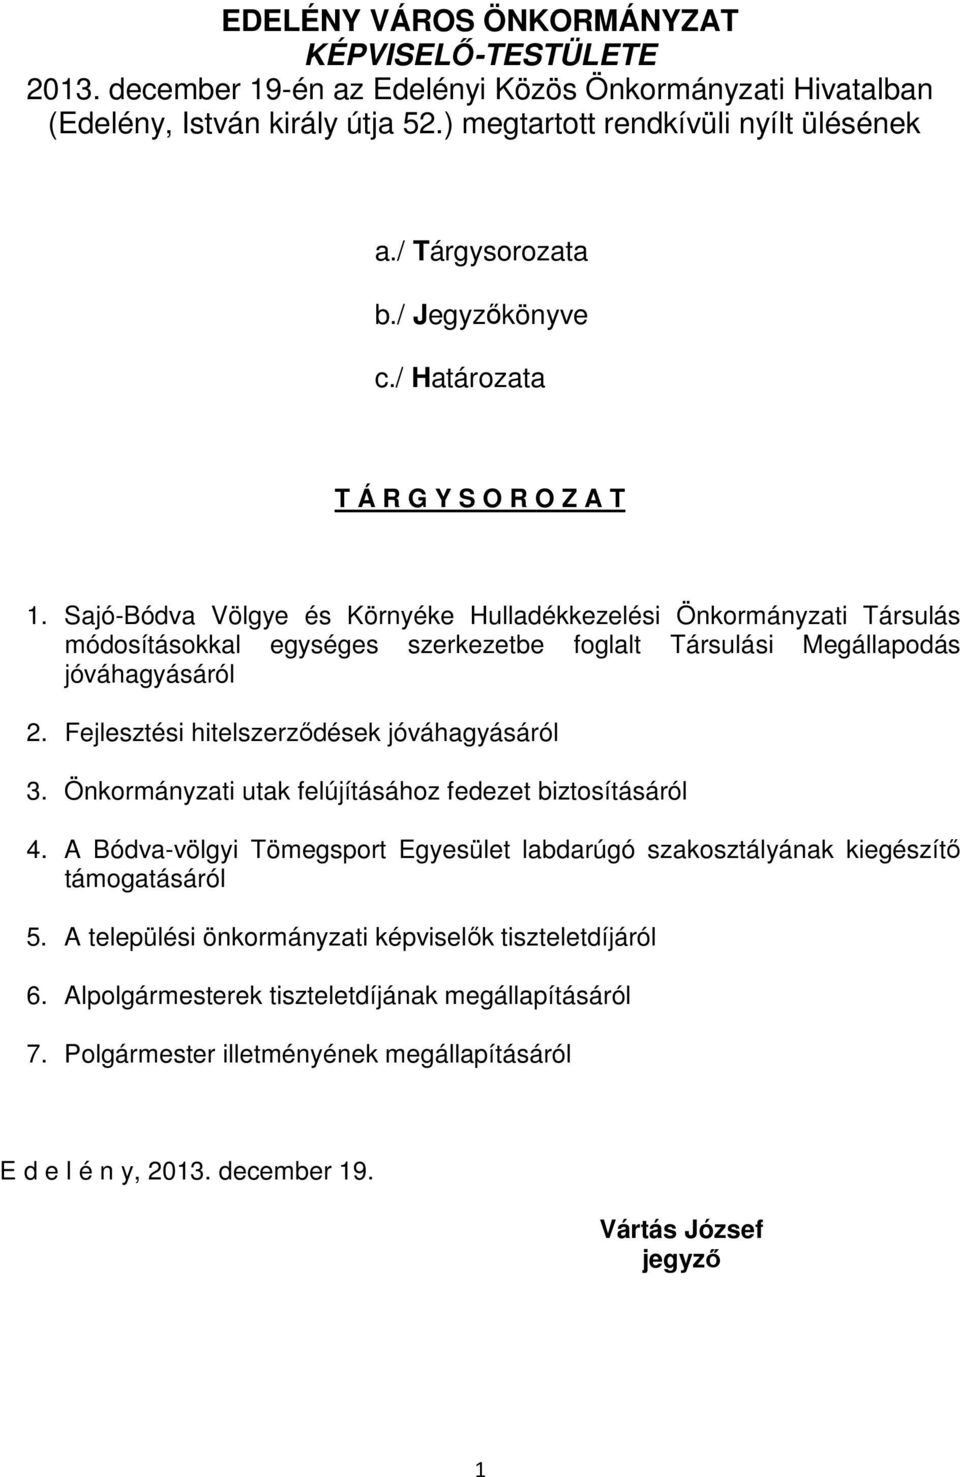 Sajó-Bódva Völgye és Környéke Hulladékkezelési Önkormányzati Társulás módosításokkal egységes szerkezetbe foglalt Társulási Megállapodás jóváhagyásáról 2.